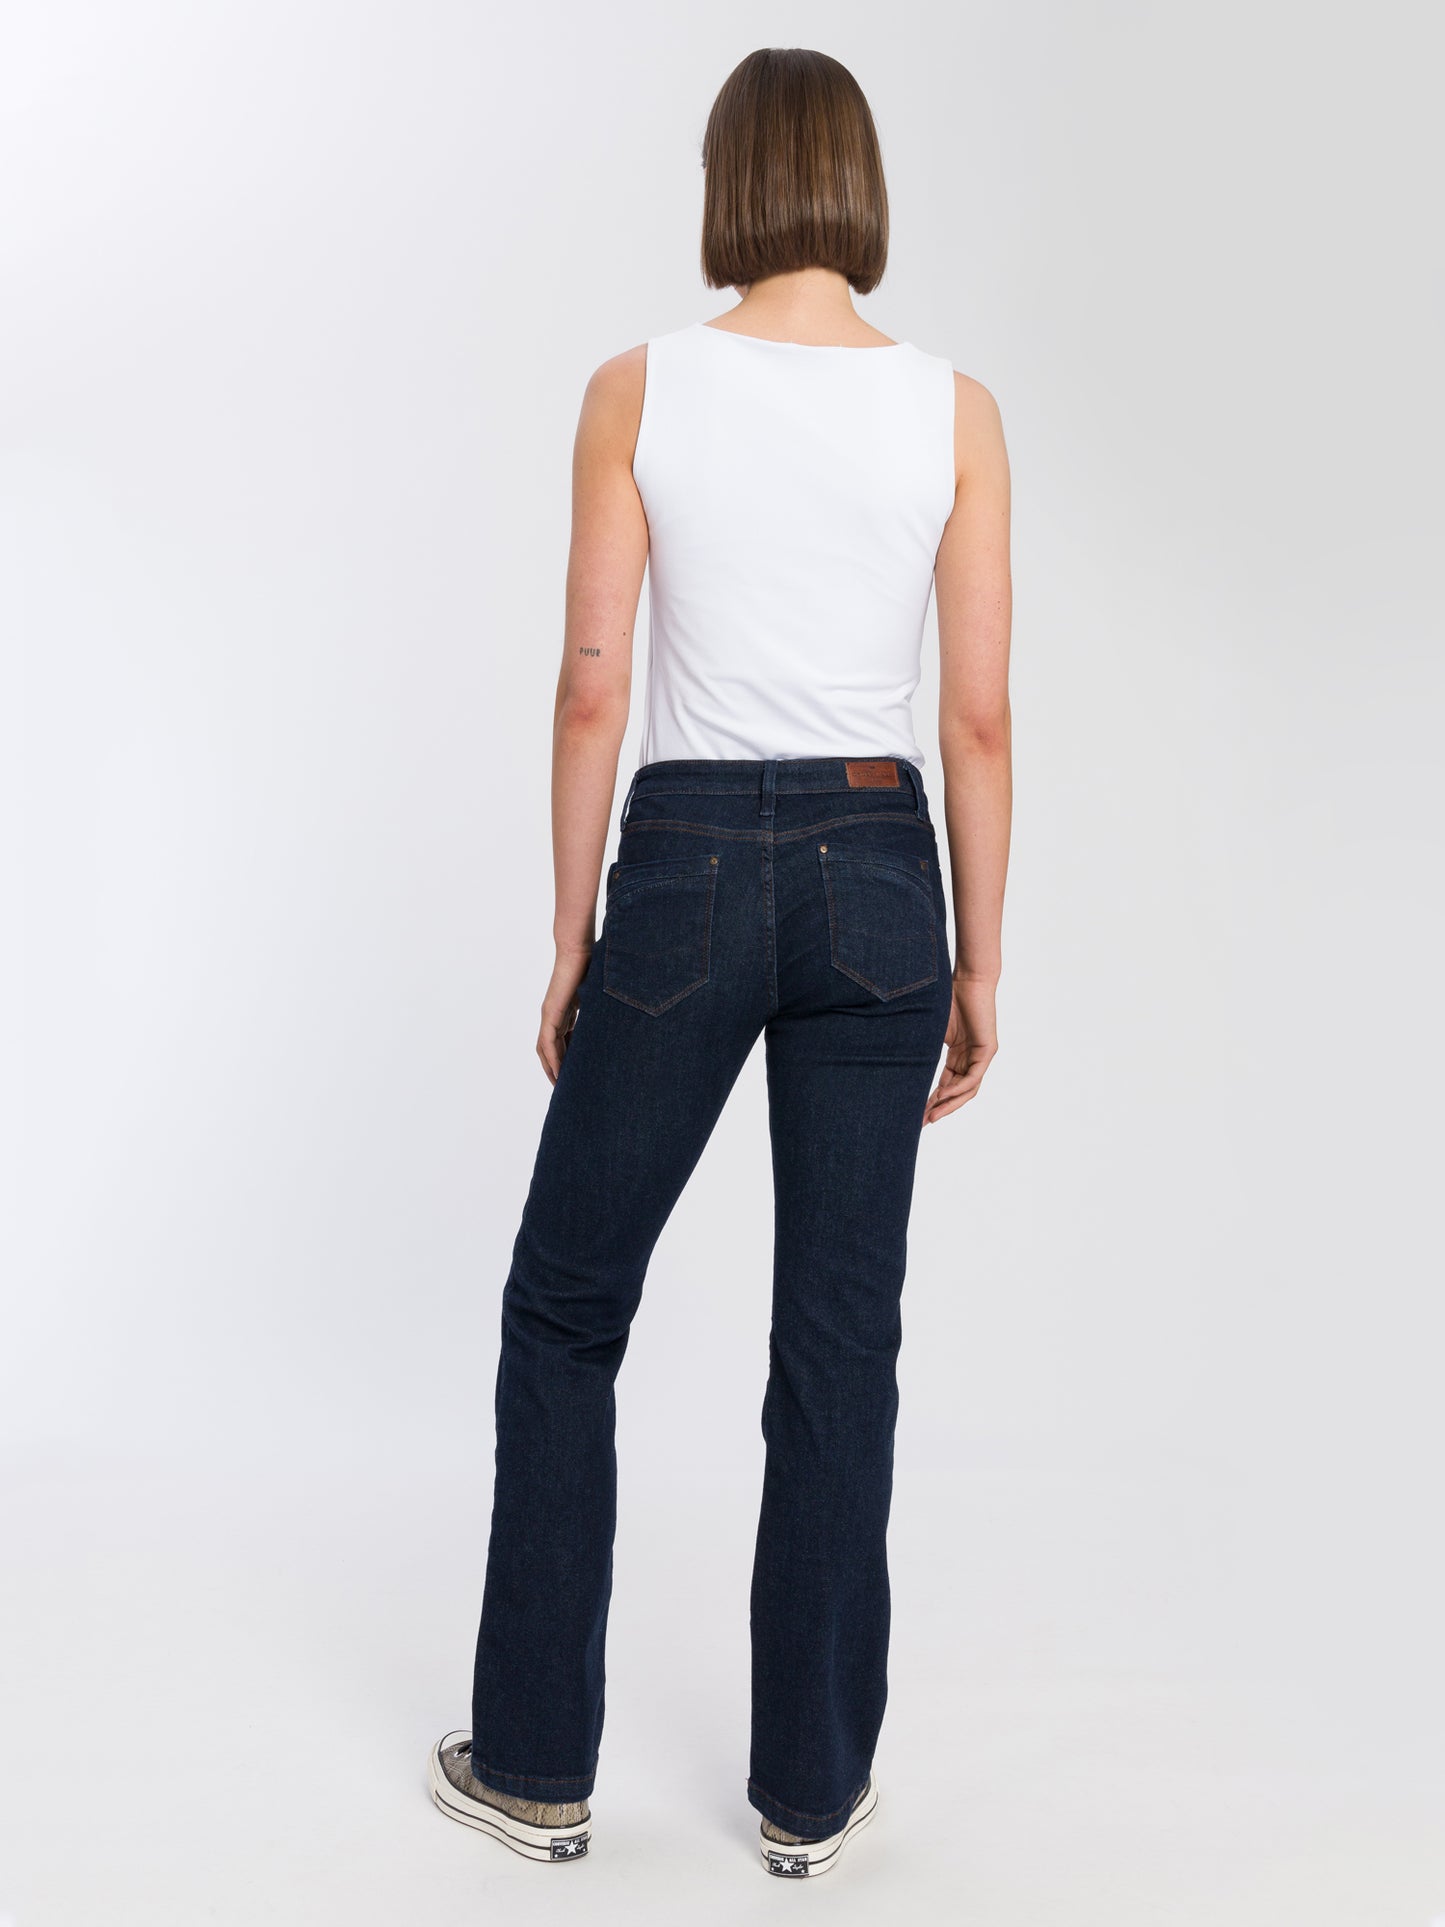 Lauren women's jeans regular fit high waist bootcut rinsed